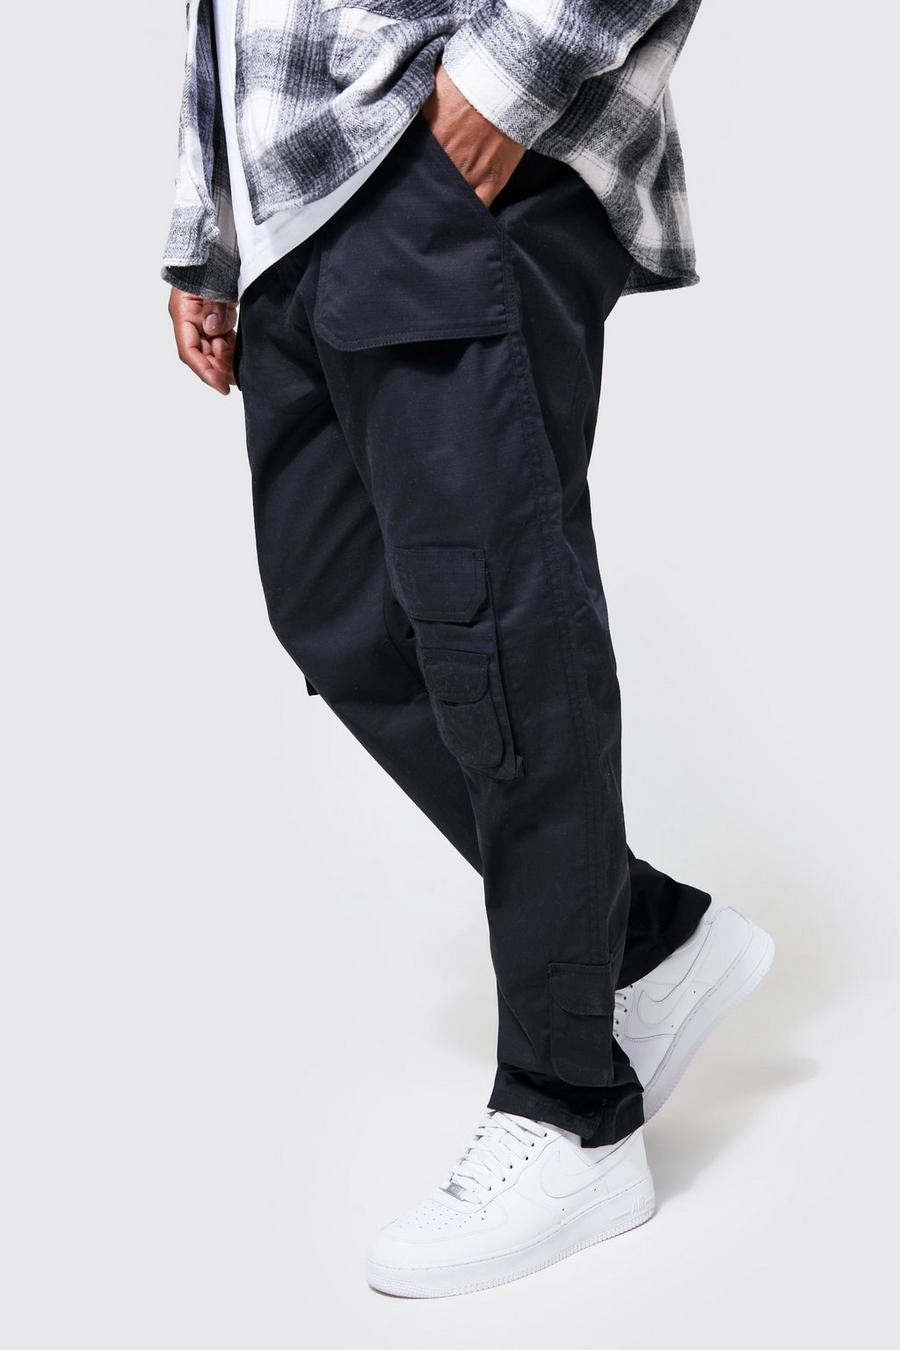 Pantalón Plus de pernera ajustada con multibolsillos cargo, Black negro